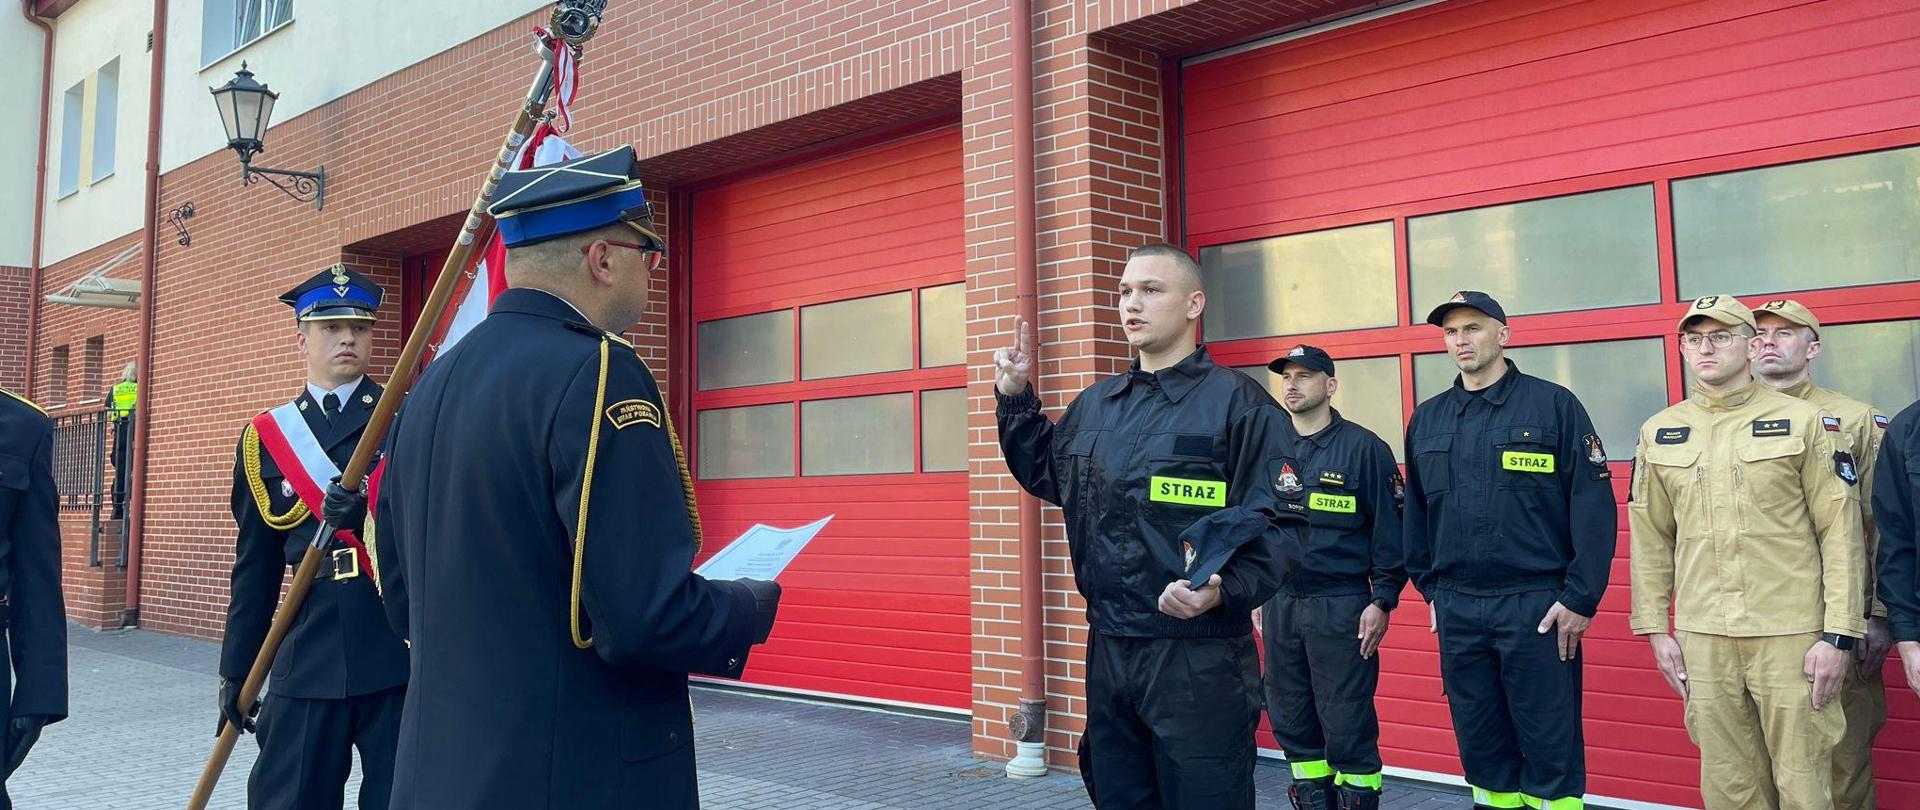 Ślubowanie strażaka w obecności pracowników KM PSP Sopot